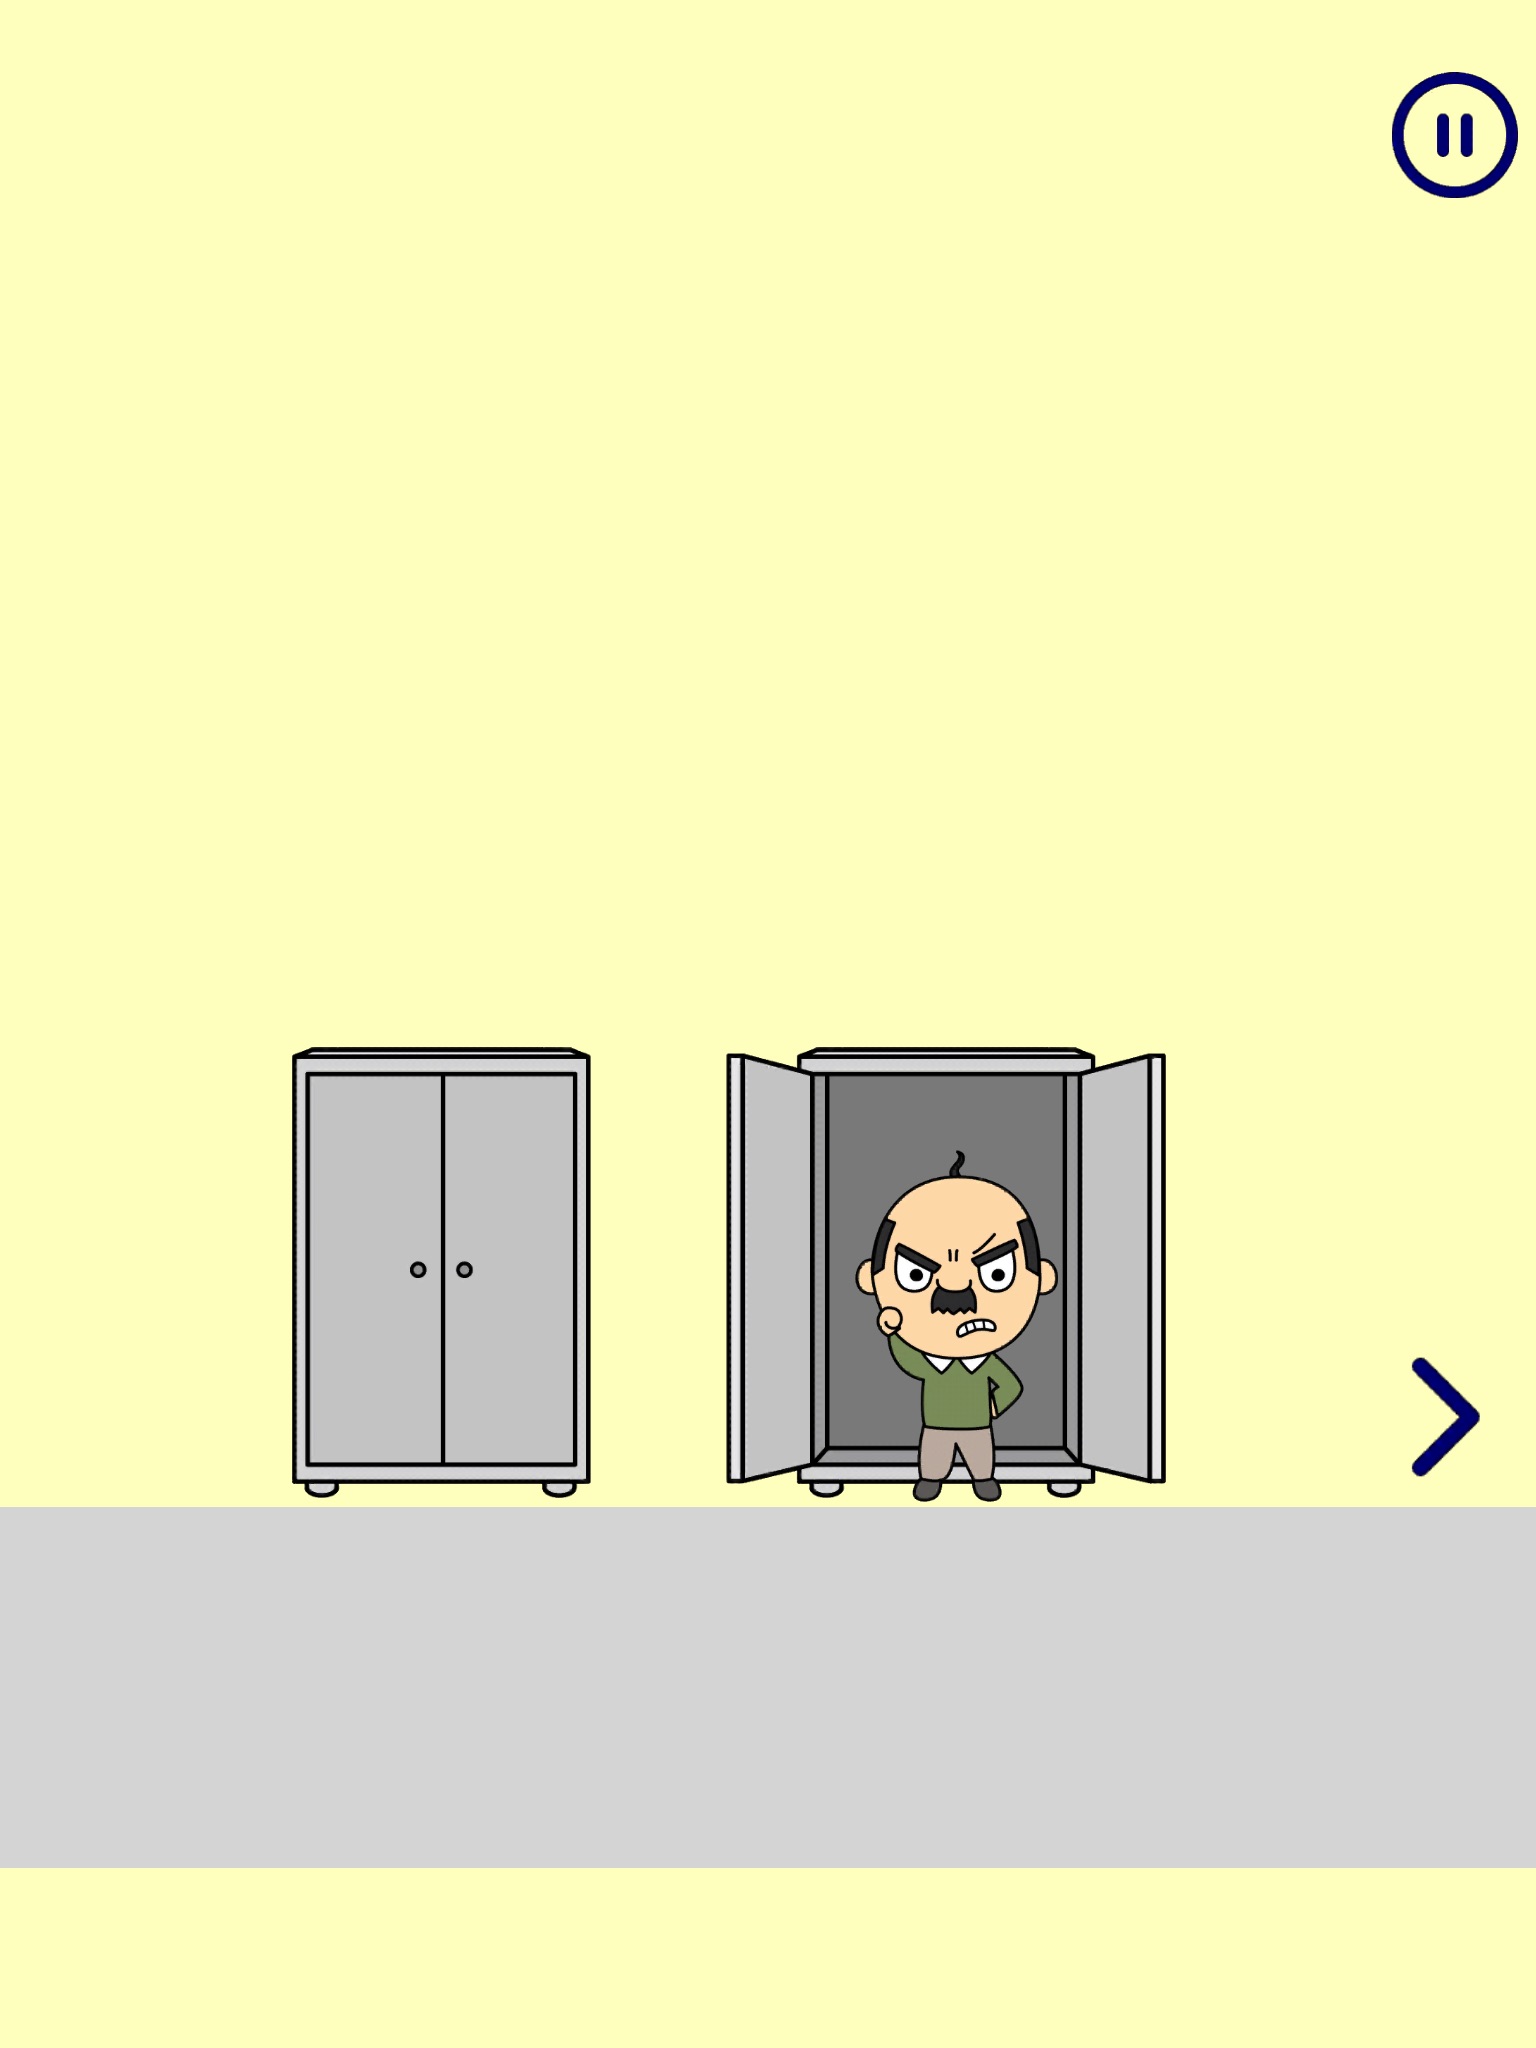 Hide and seek - Escape game screenshot 3